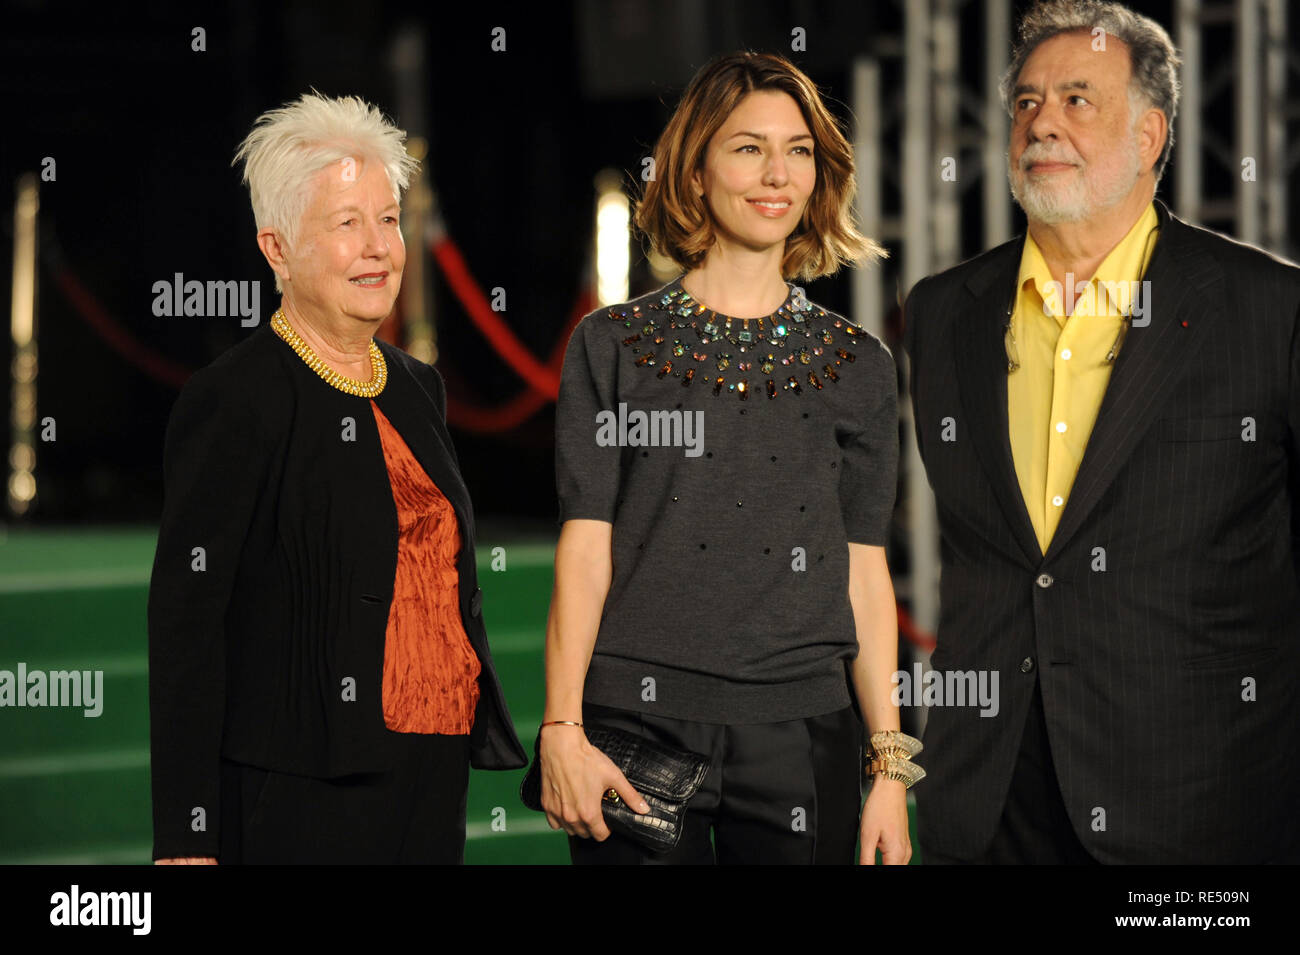 Elenor Coppola, Sofia Coppola y Francis Ford Coppola asistir al 26º Festival Internacional de Cine de Tokio Ceremonia de Apertura en Roppongi Hills en Tokio, Japón, 17 de octubre de 2013. Foto de stock